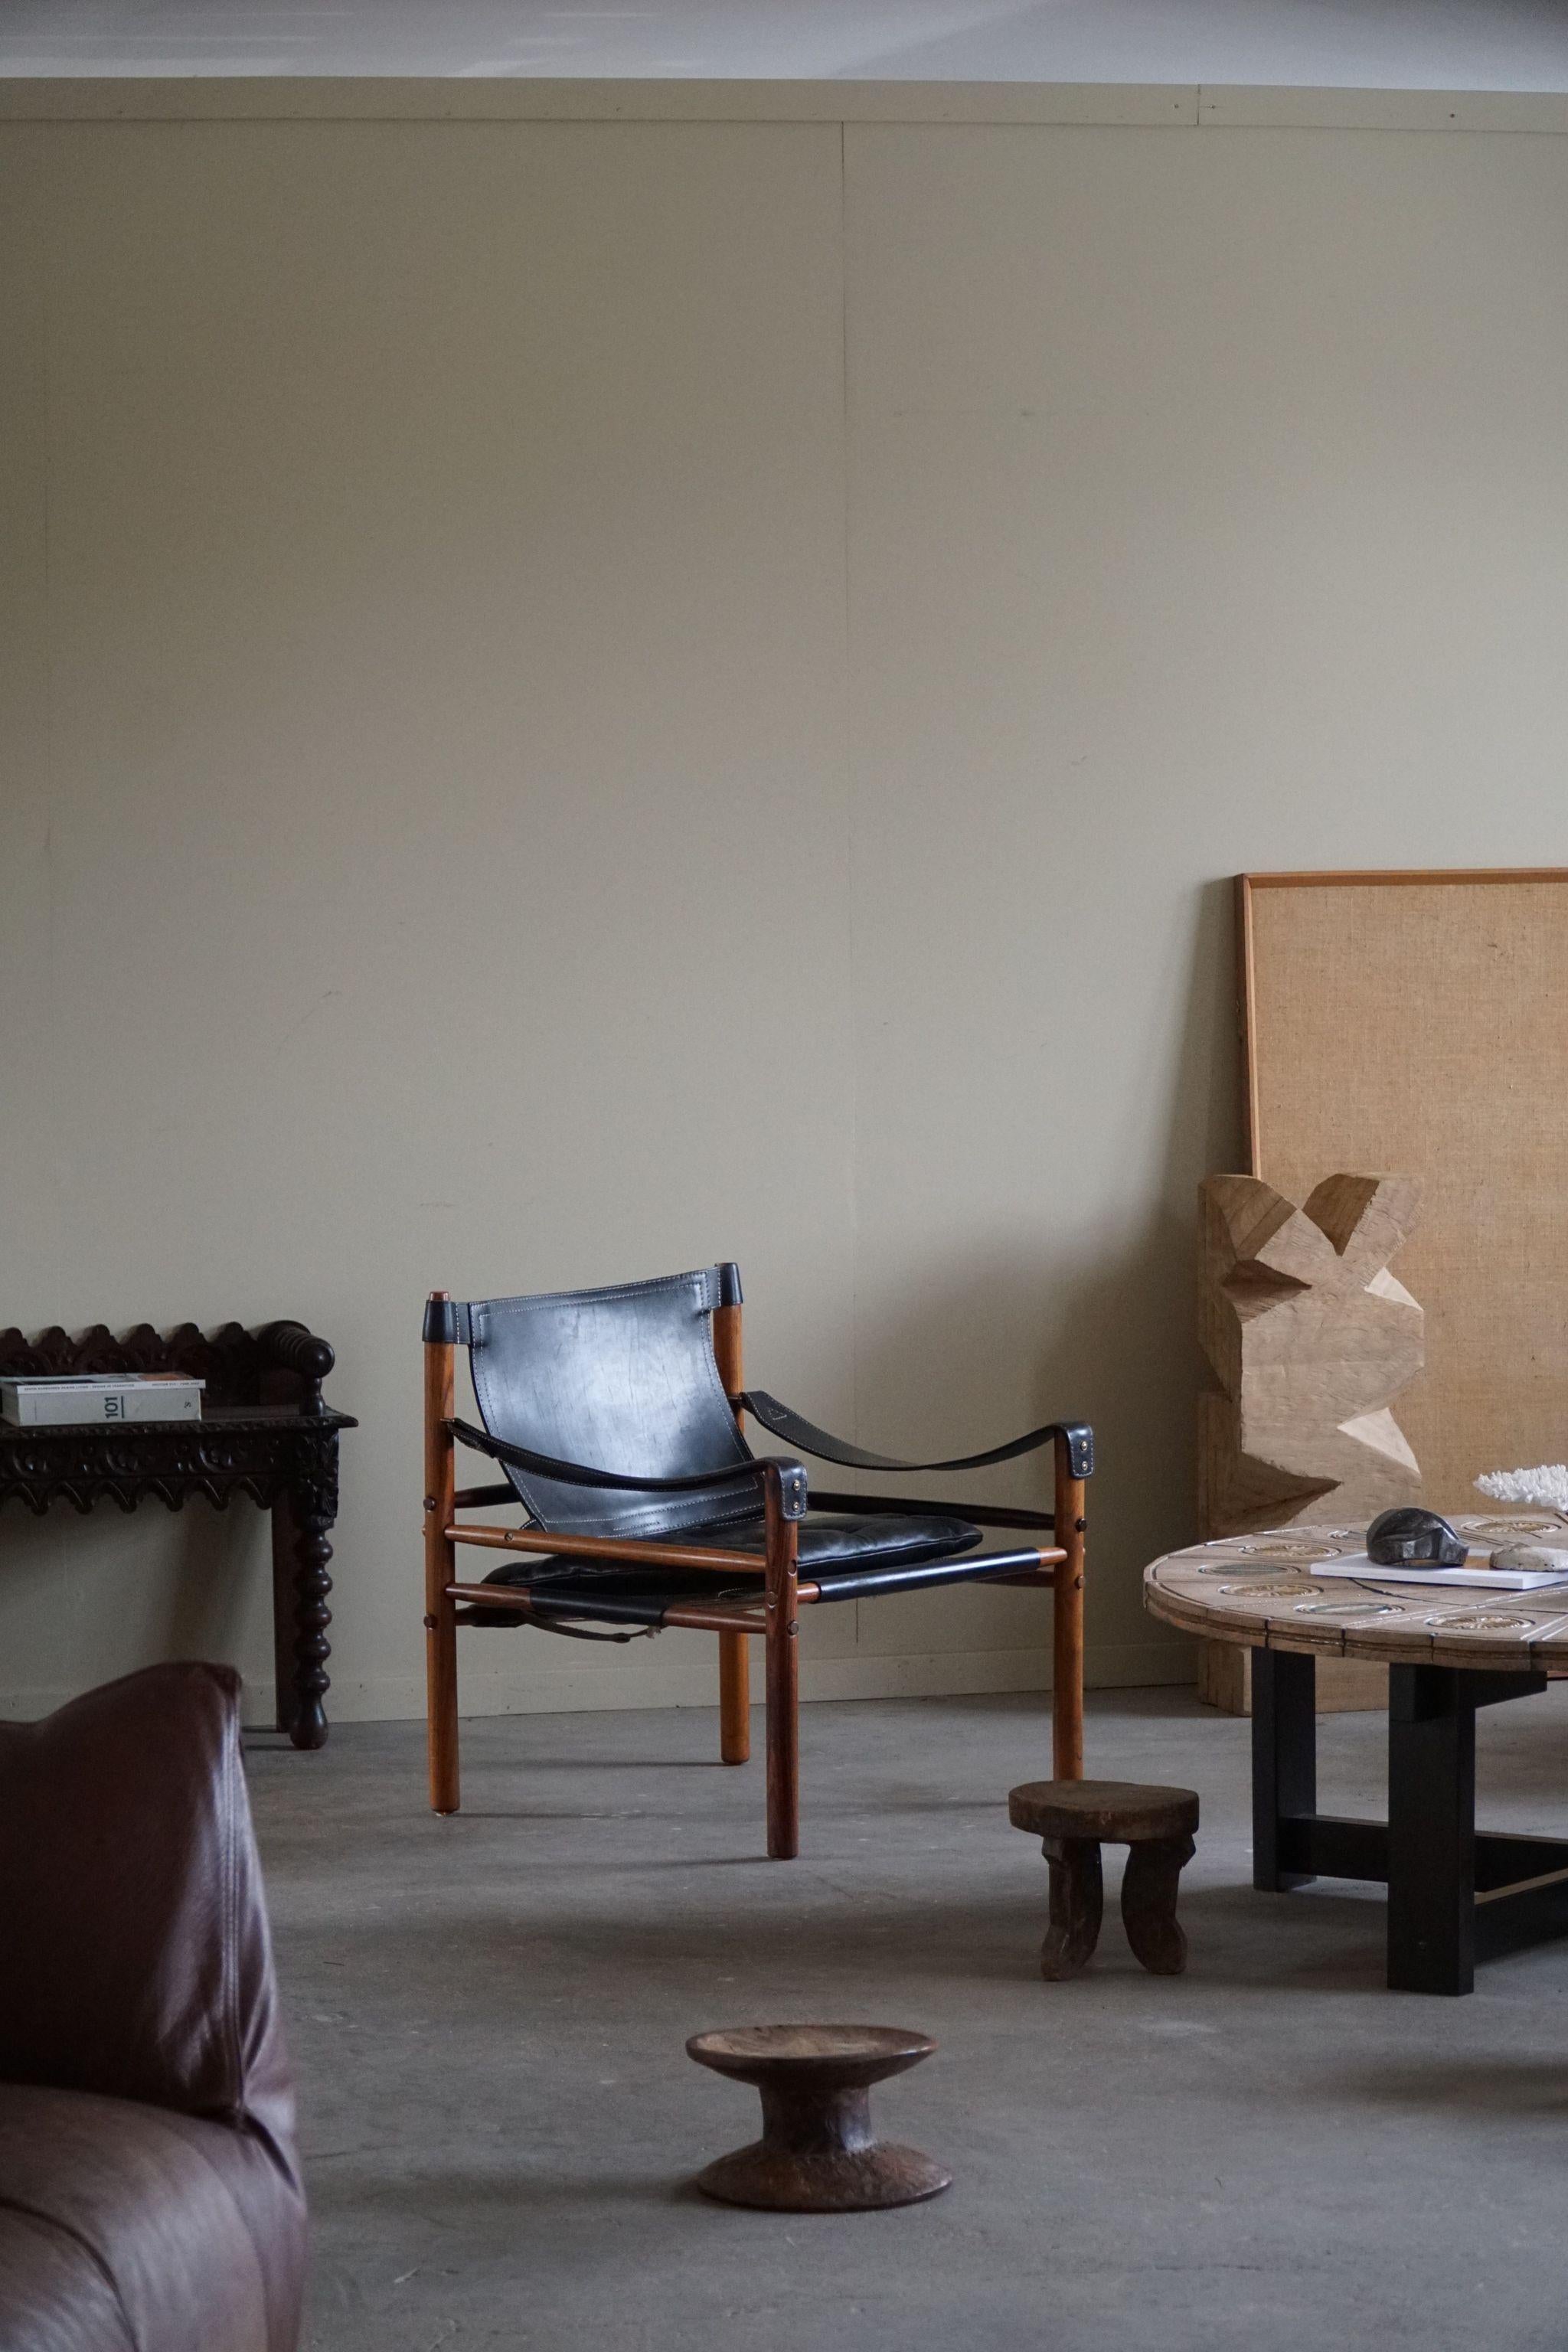 Une belle paire de chaises safari en cuir noir et bois de rose. 
Conçu par Arne Norell, produit par Arne Norell AB à Aneby, en Suède, dans les années 1960.
Cet ensemble est dans un très bon état vintage.

Ces fauteuils attrayants s'intègrent dans de